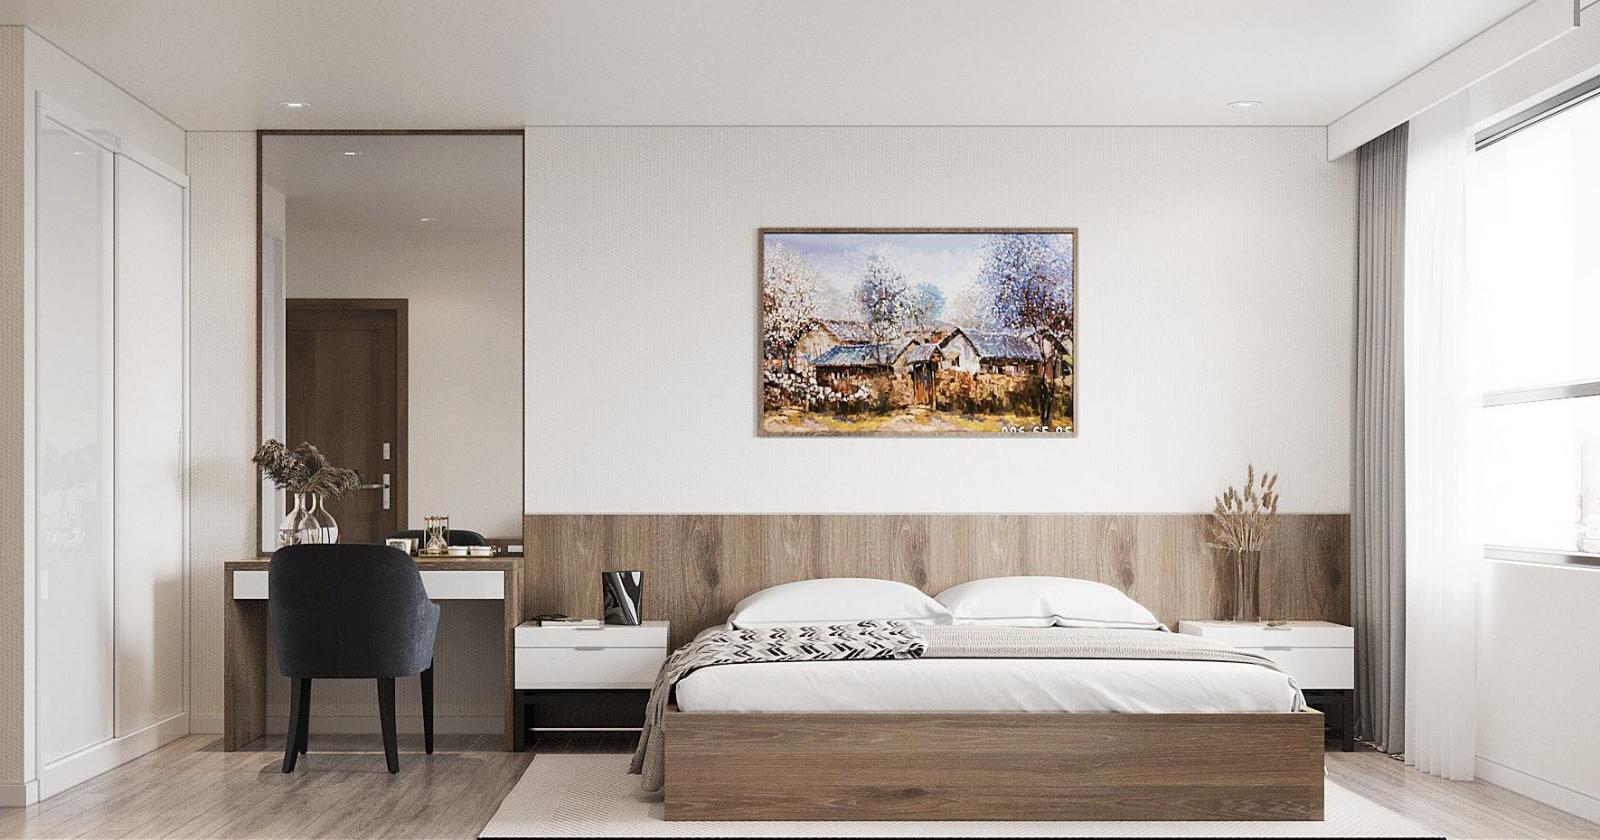 Phòng ngủ master thiết kế theo phong cách hiện đại, tối giản với bảng màu trung tính nhẹ nhàng, tạo cảm giác thư thái.